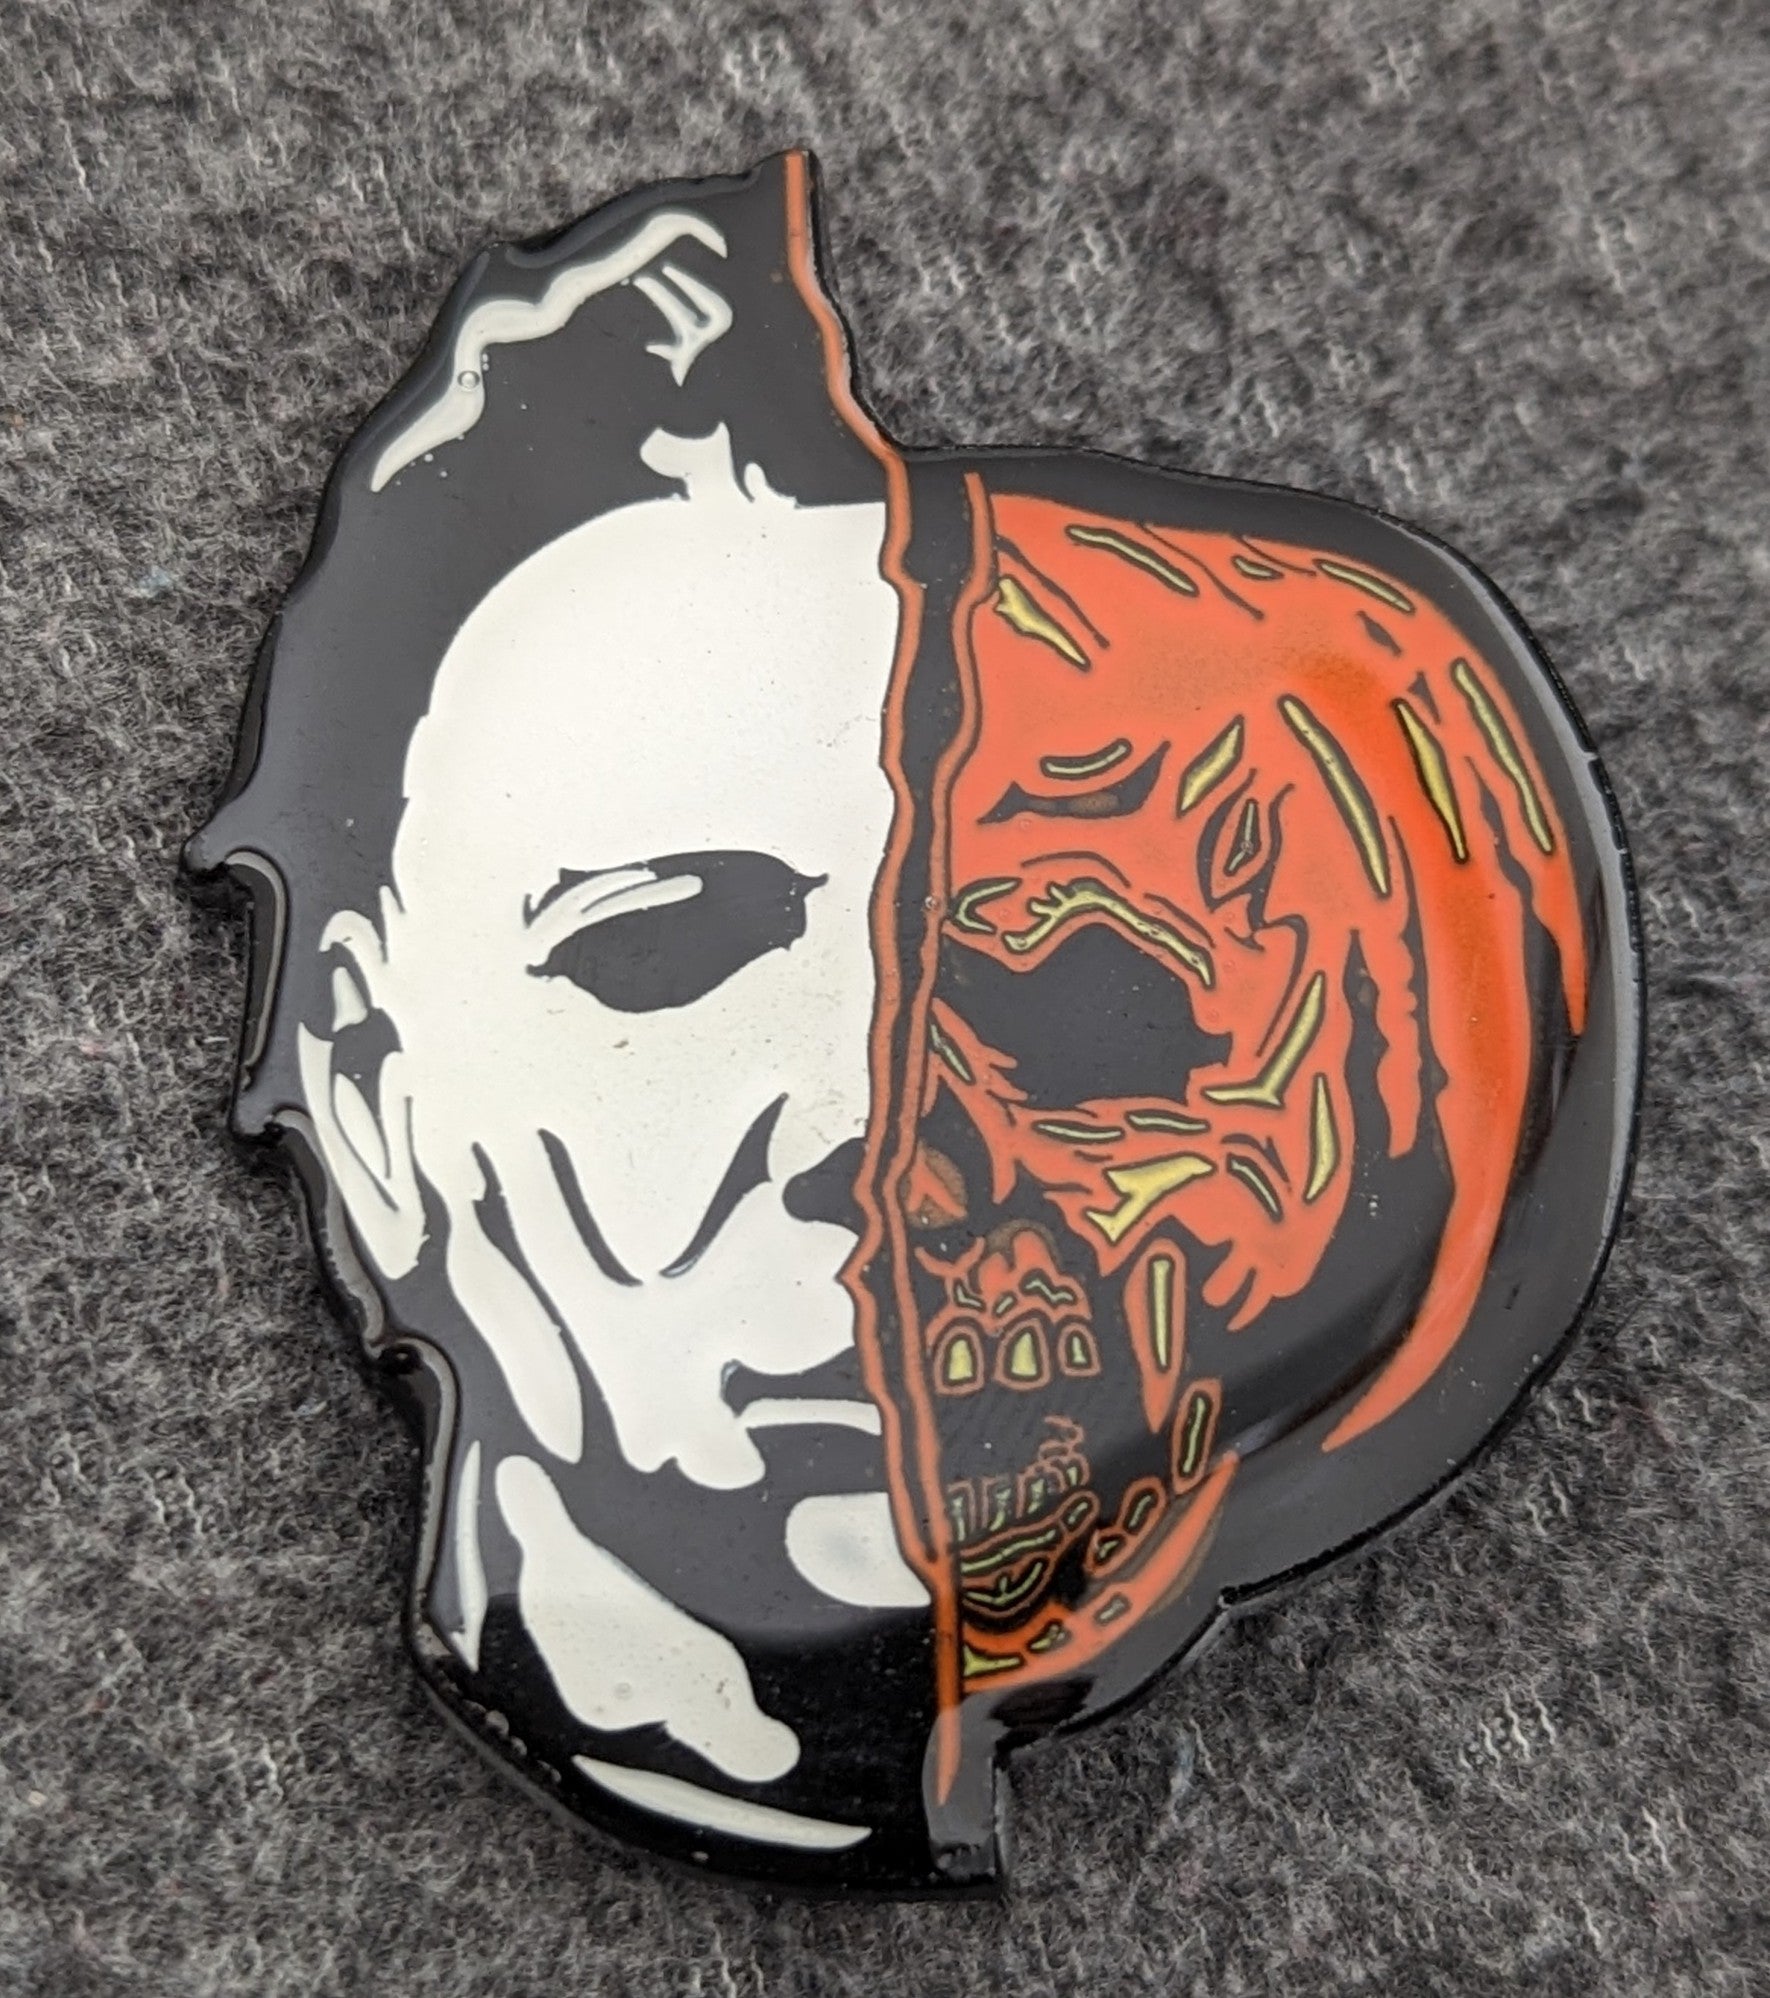 Michael Myers Split Mask Pumpkin Face Glow in the Dark Pin Official Halloween II Horror Movie Enamel Pin